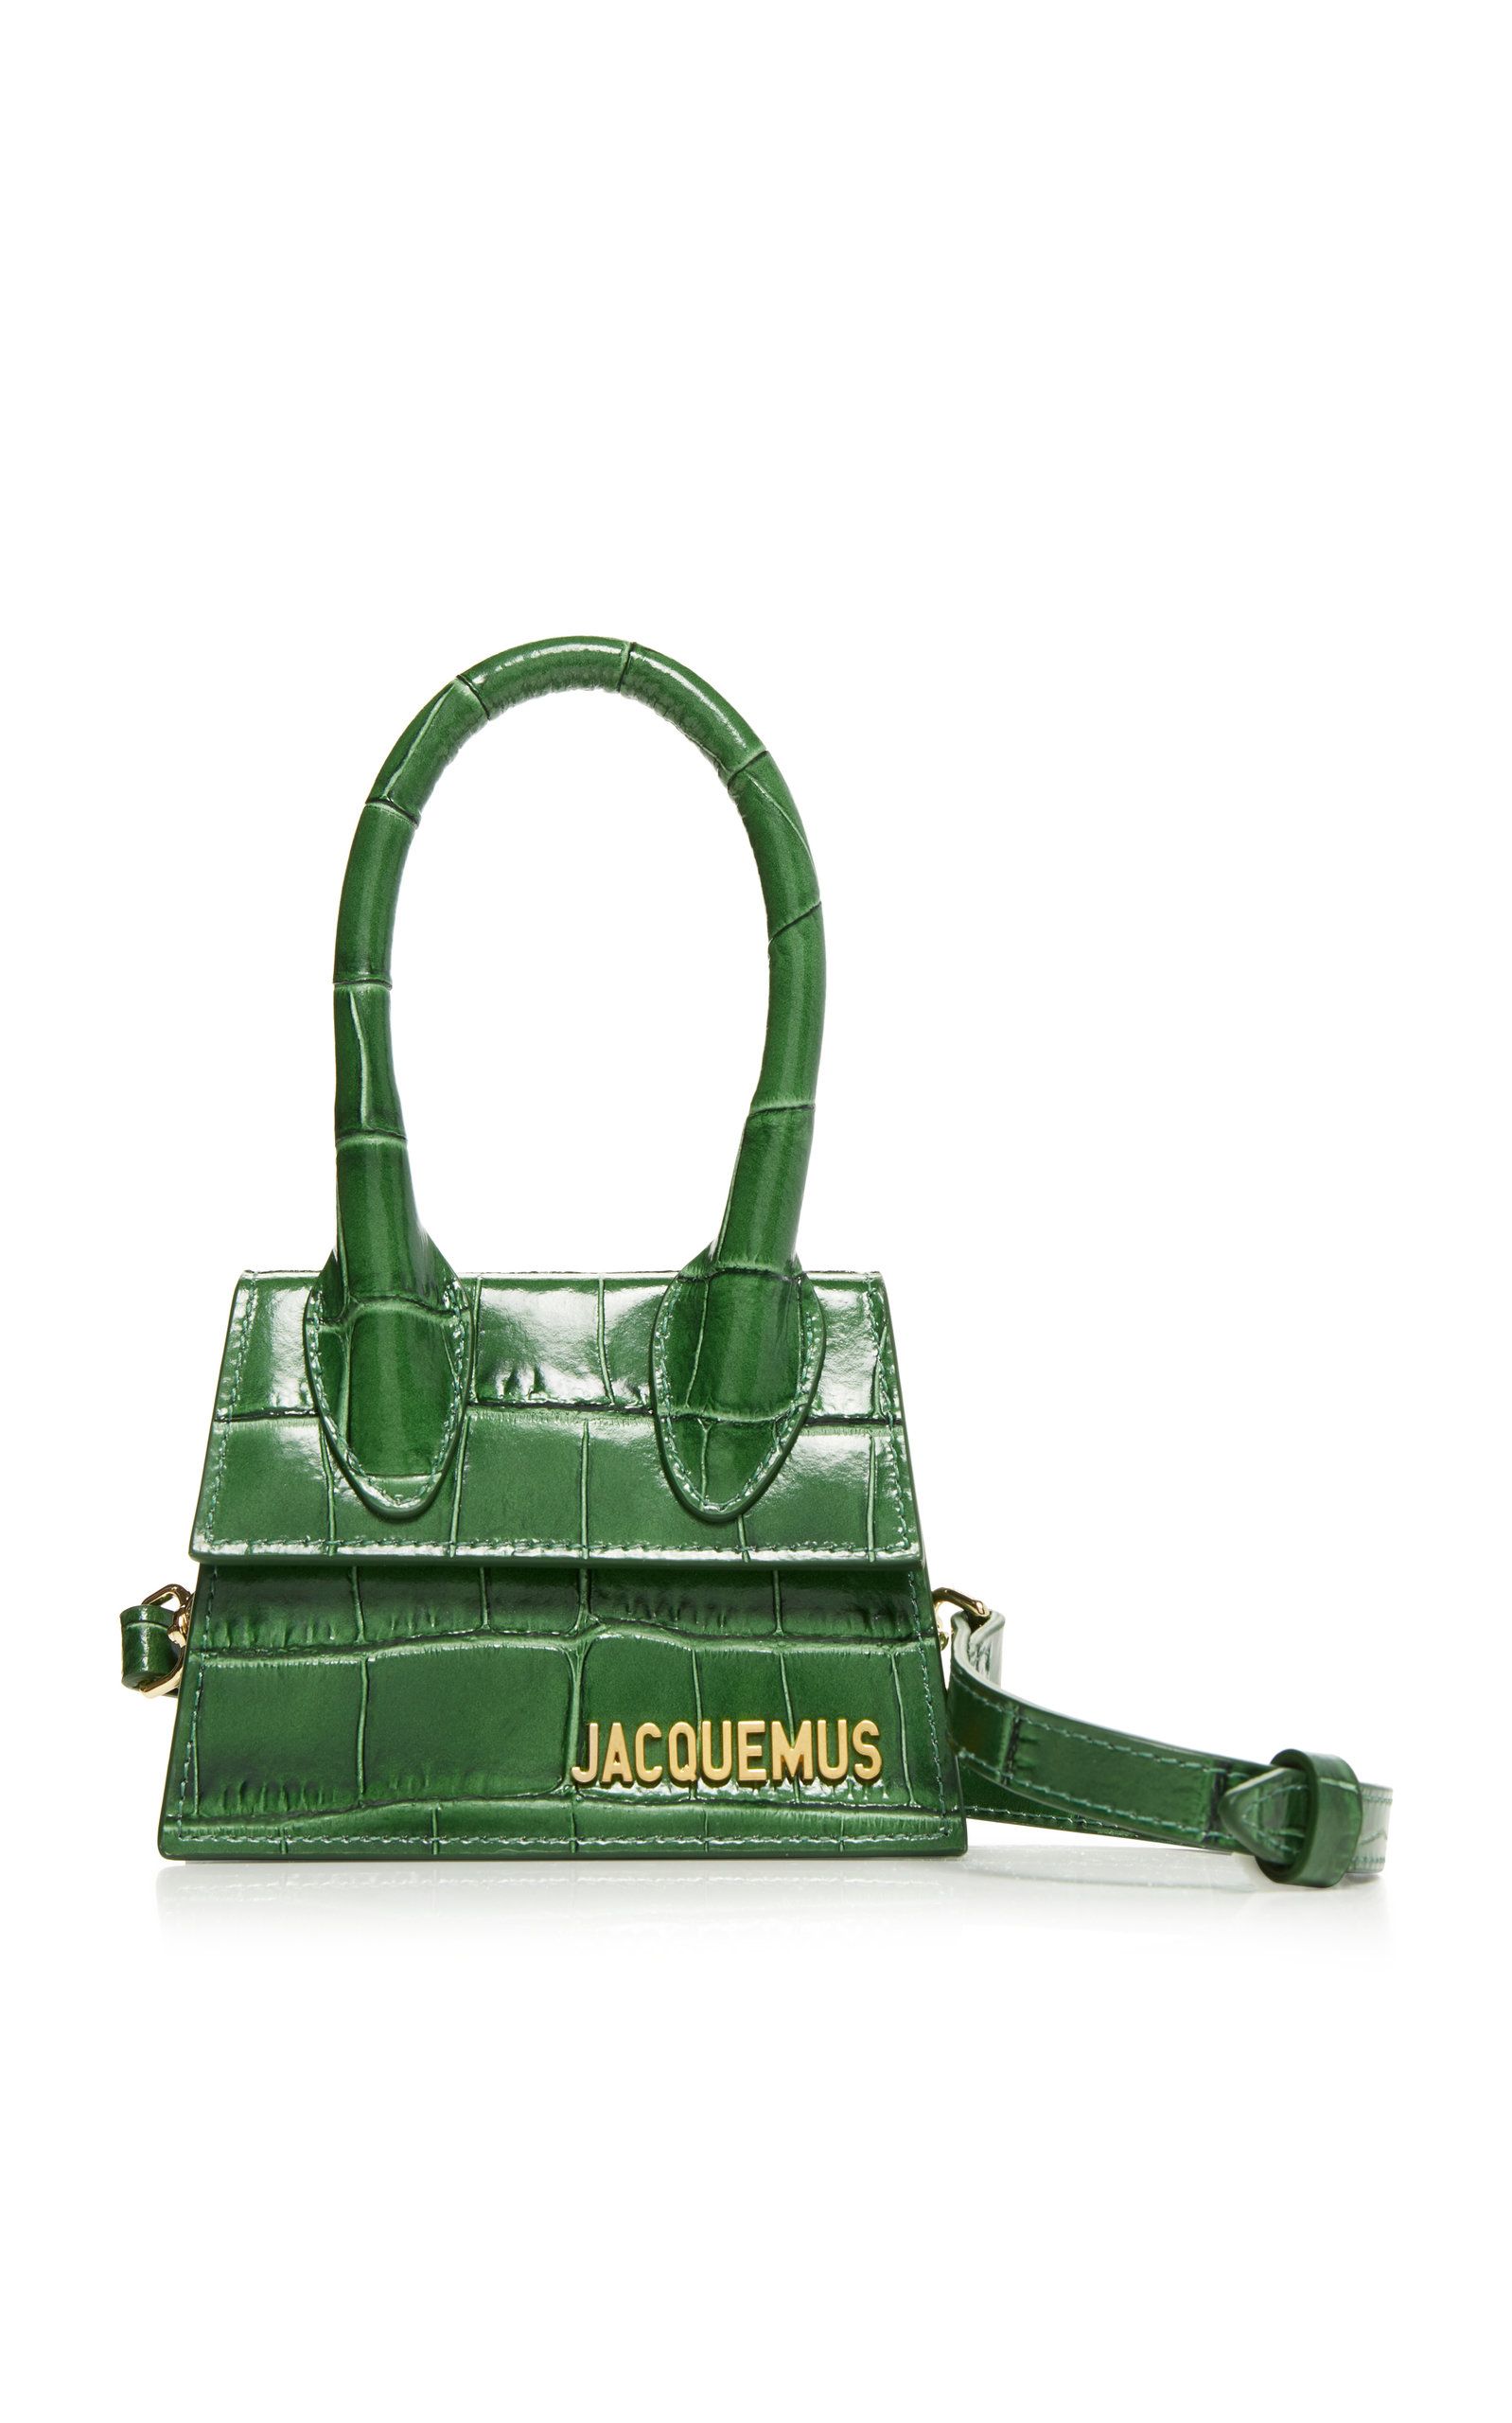 Jacquemus Le Chiquito Leather Mini Bag | Moda Operandi Global